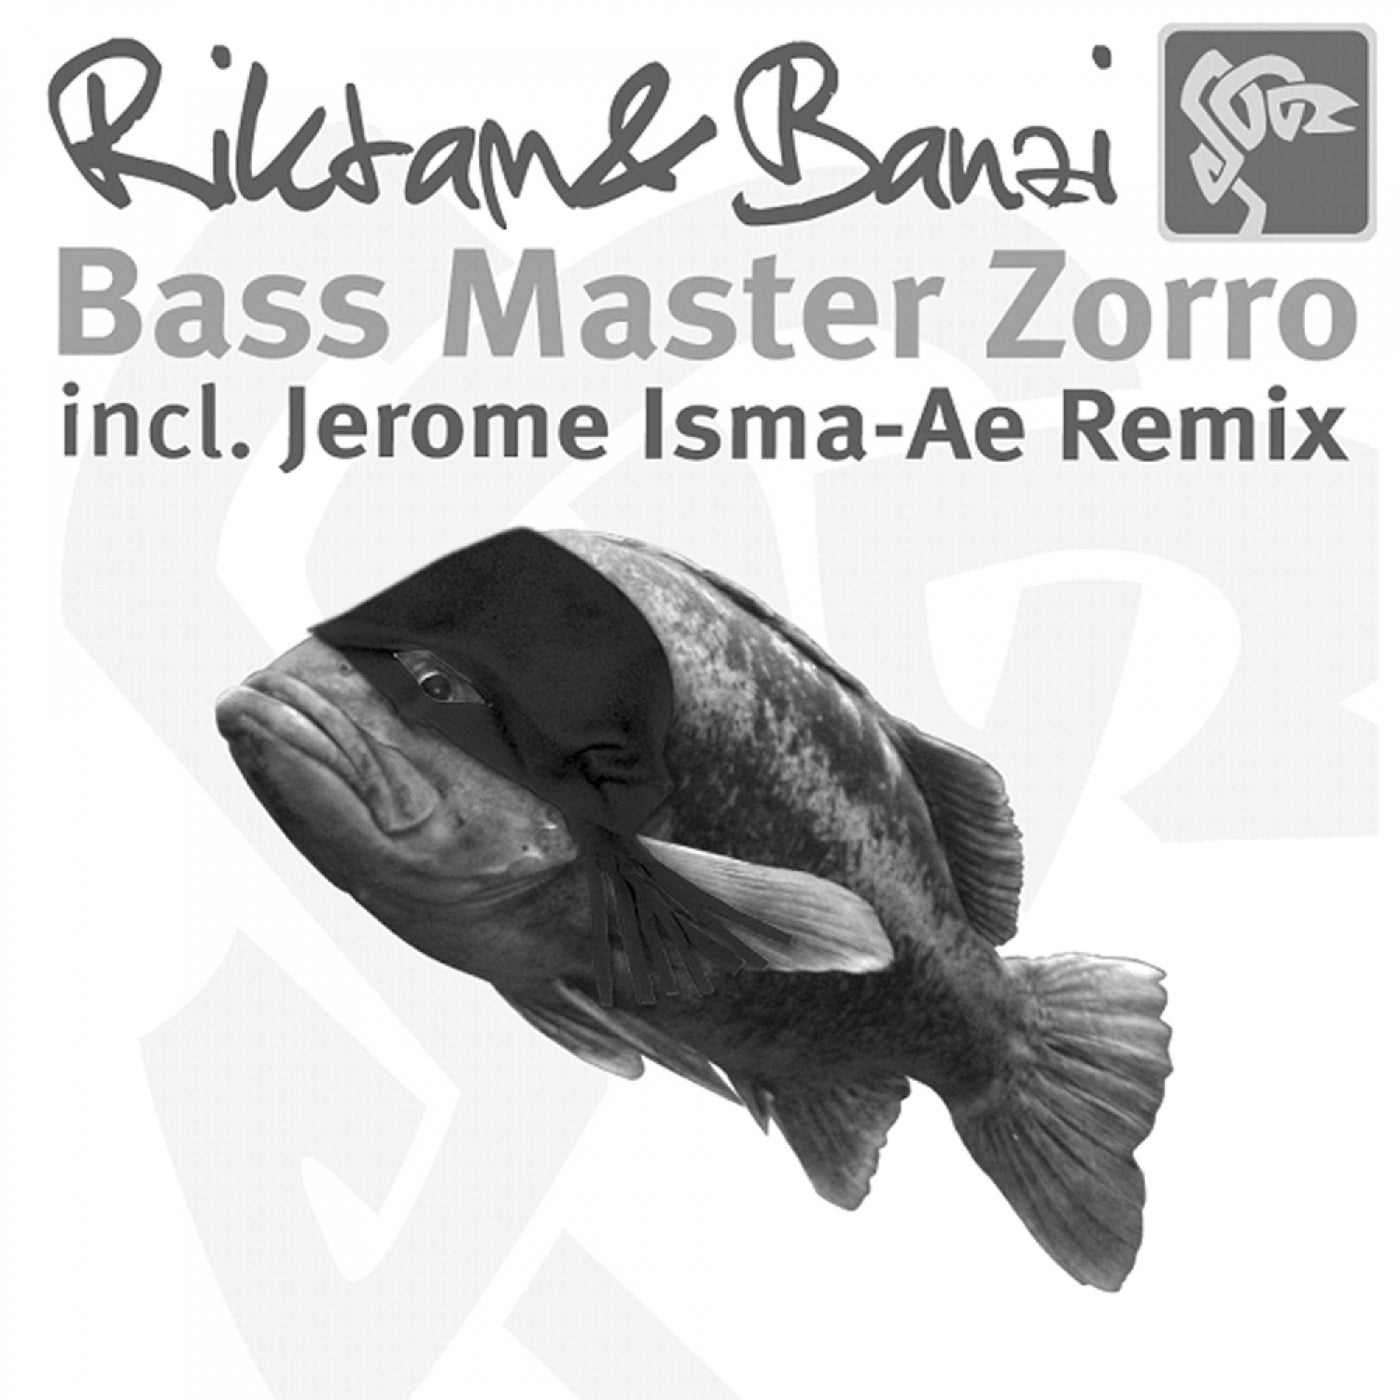 Bass Master Zorro